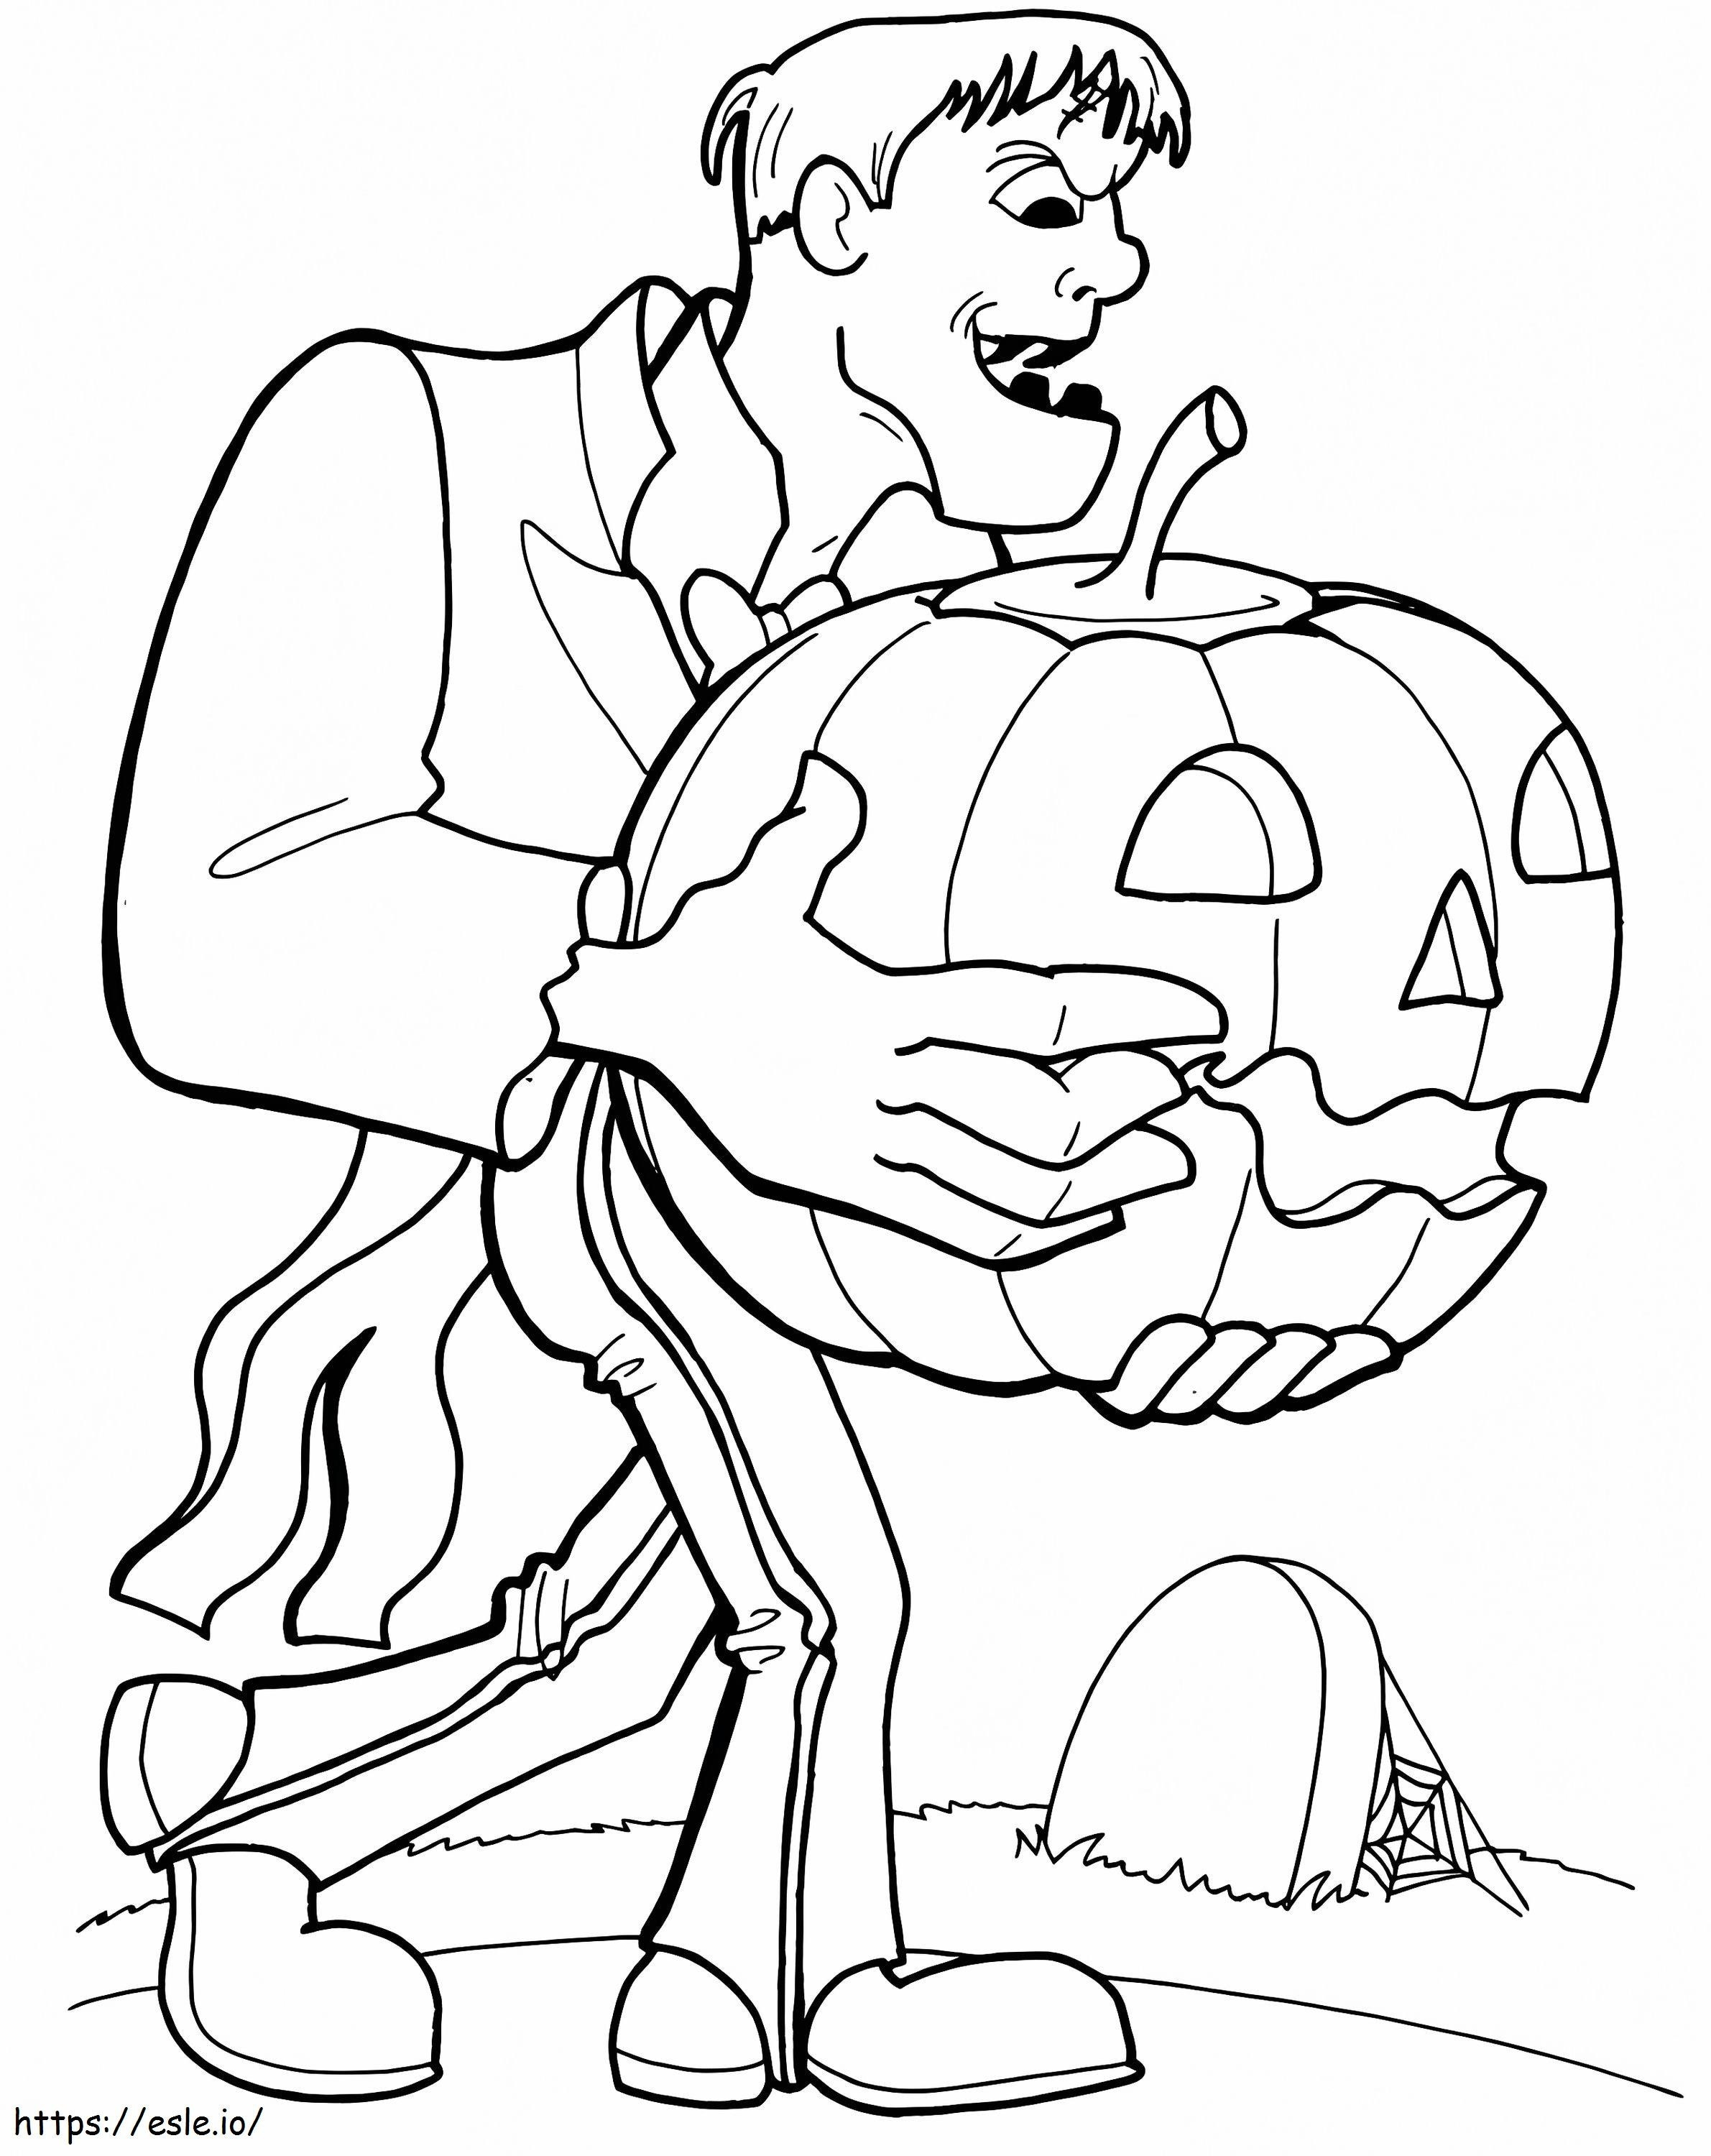 1539676914 Frankenstein Foglio da colorare Più faccia di Frankenstein da colorare